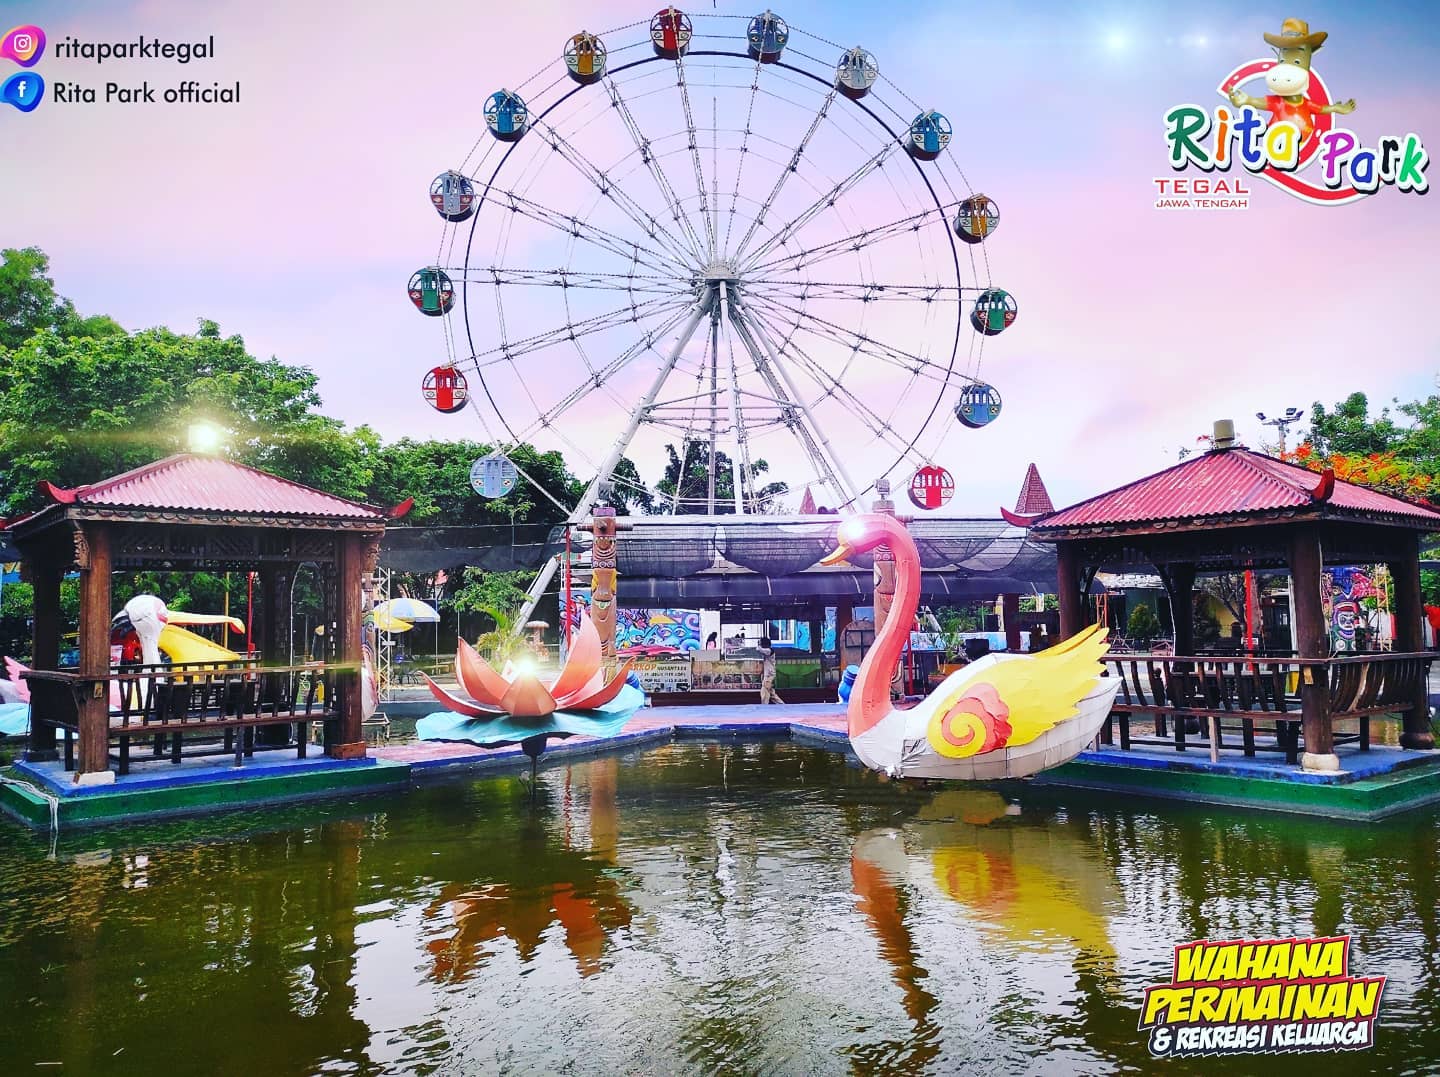 Pesona Keindahan Destinasi Wisata Rita Park dan Mall di Pesurungan Tegal Jawa Tengah